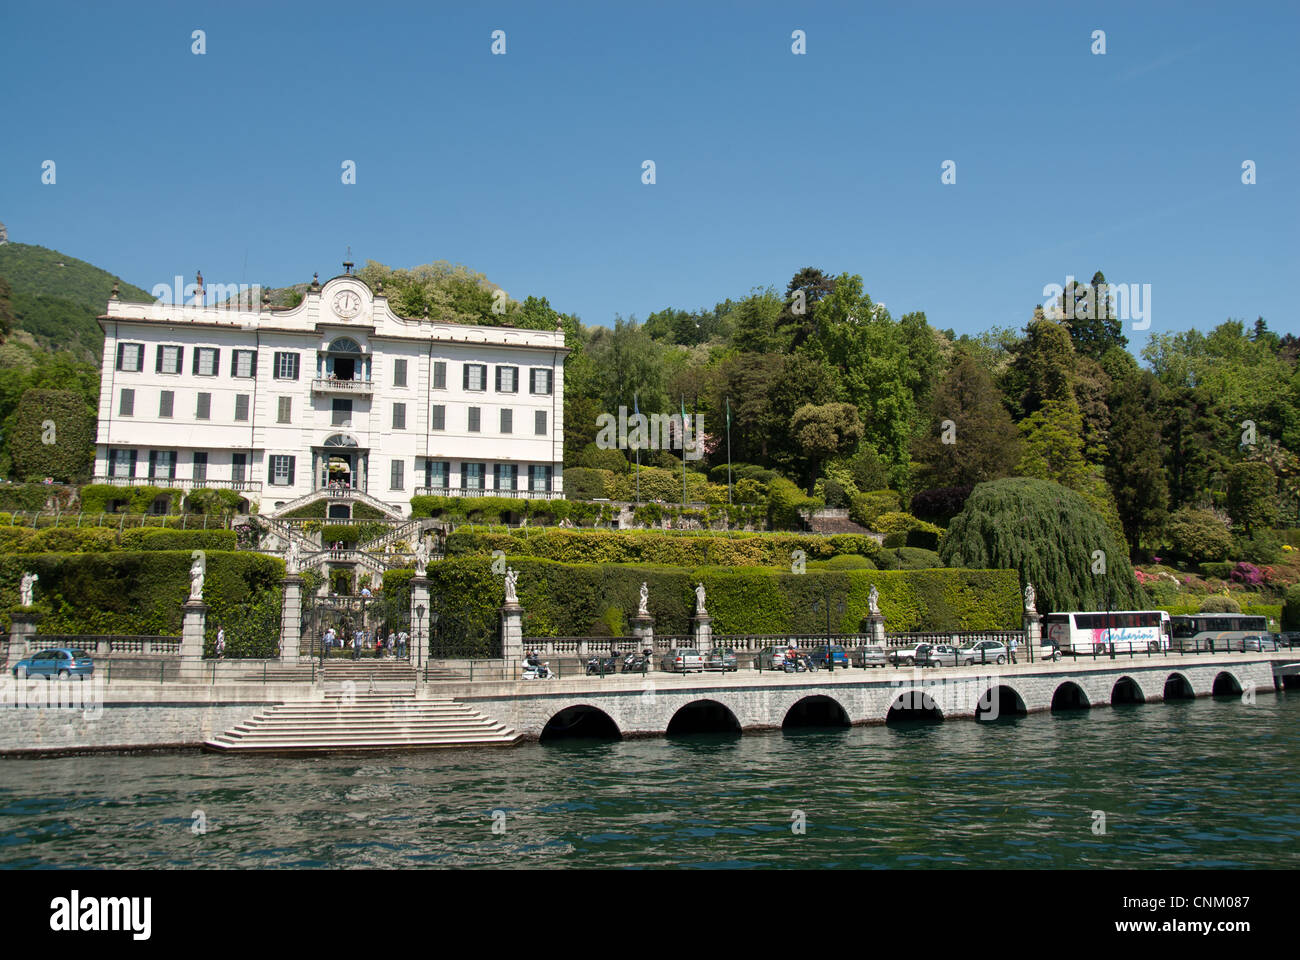 Villa Carlotta, Botanical garden. Lake Como, Italy Stock Photo